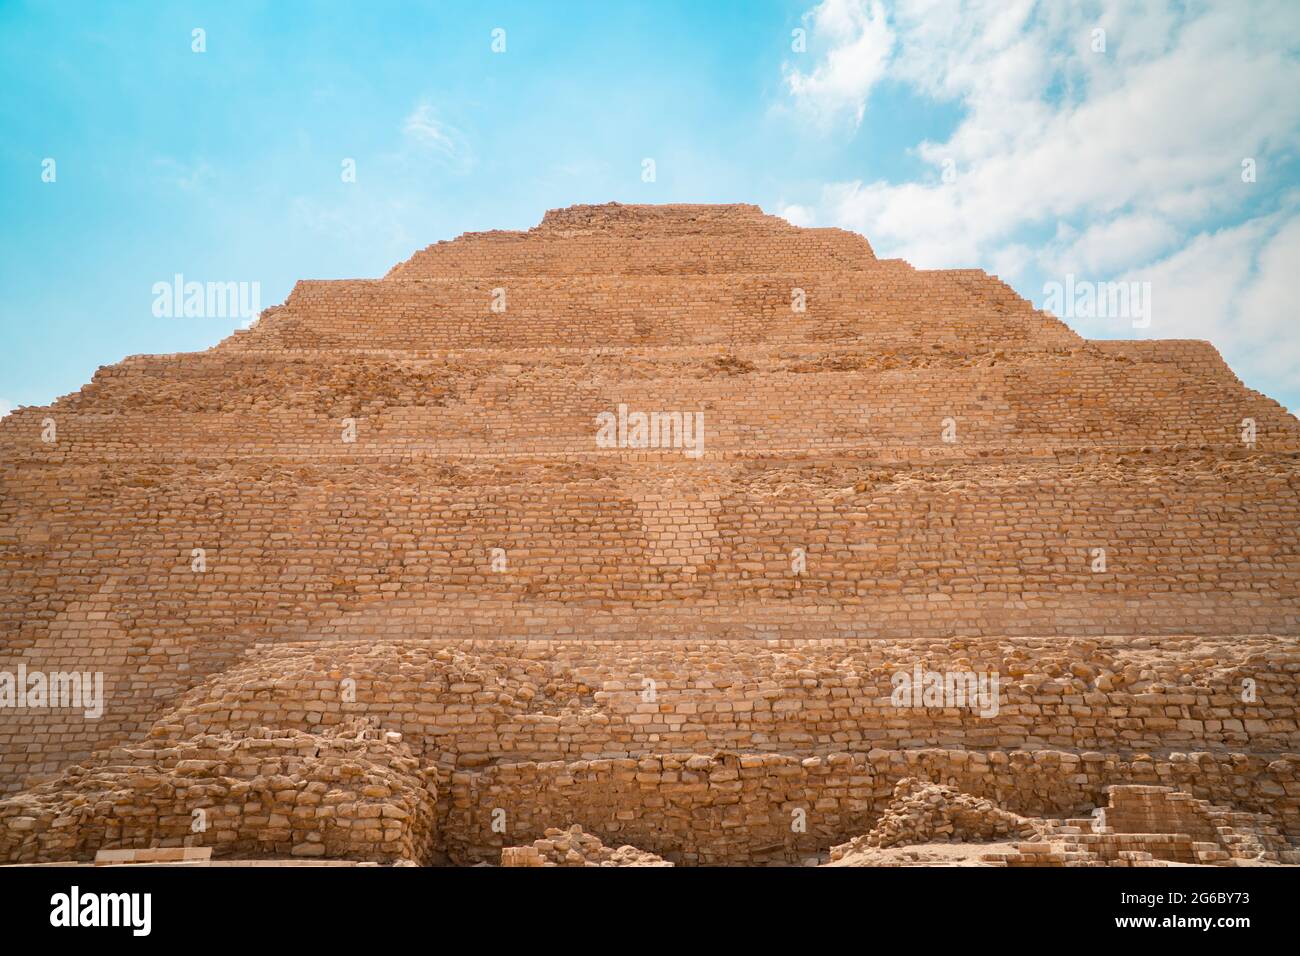 La Pirámide de Djoser en Saqqara, la pirámide más antigua de Egipto Foto de stock